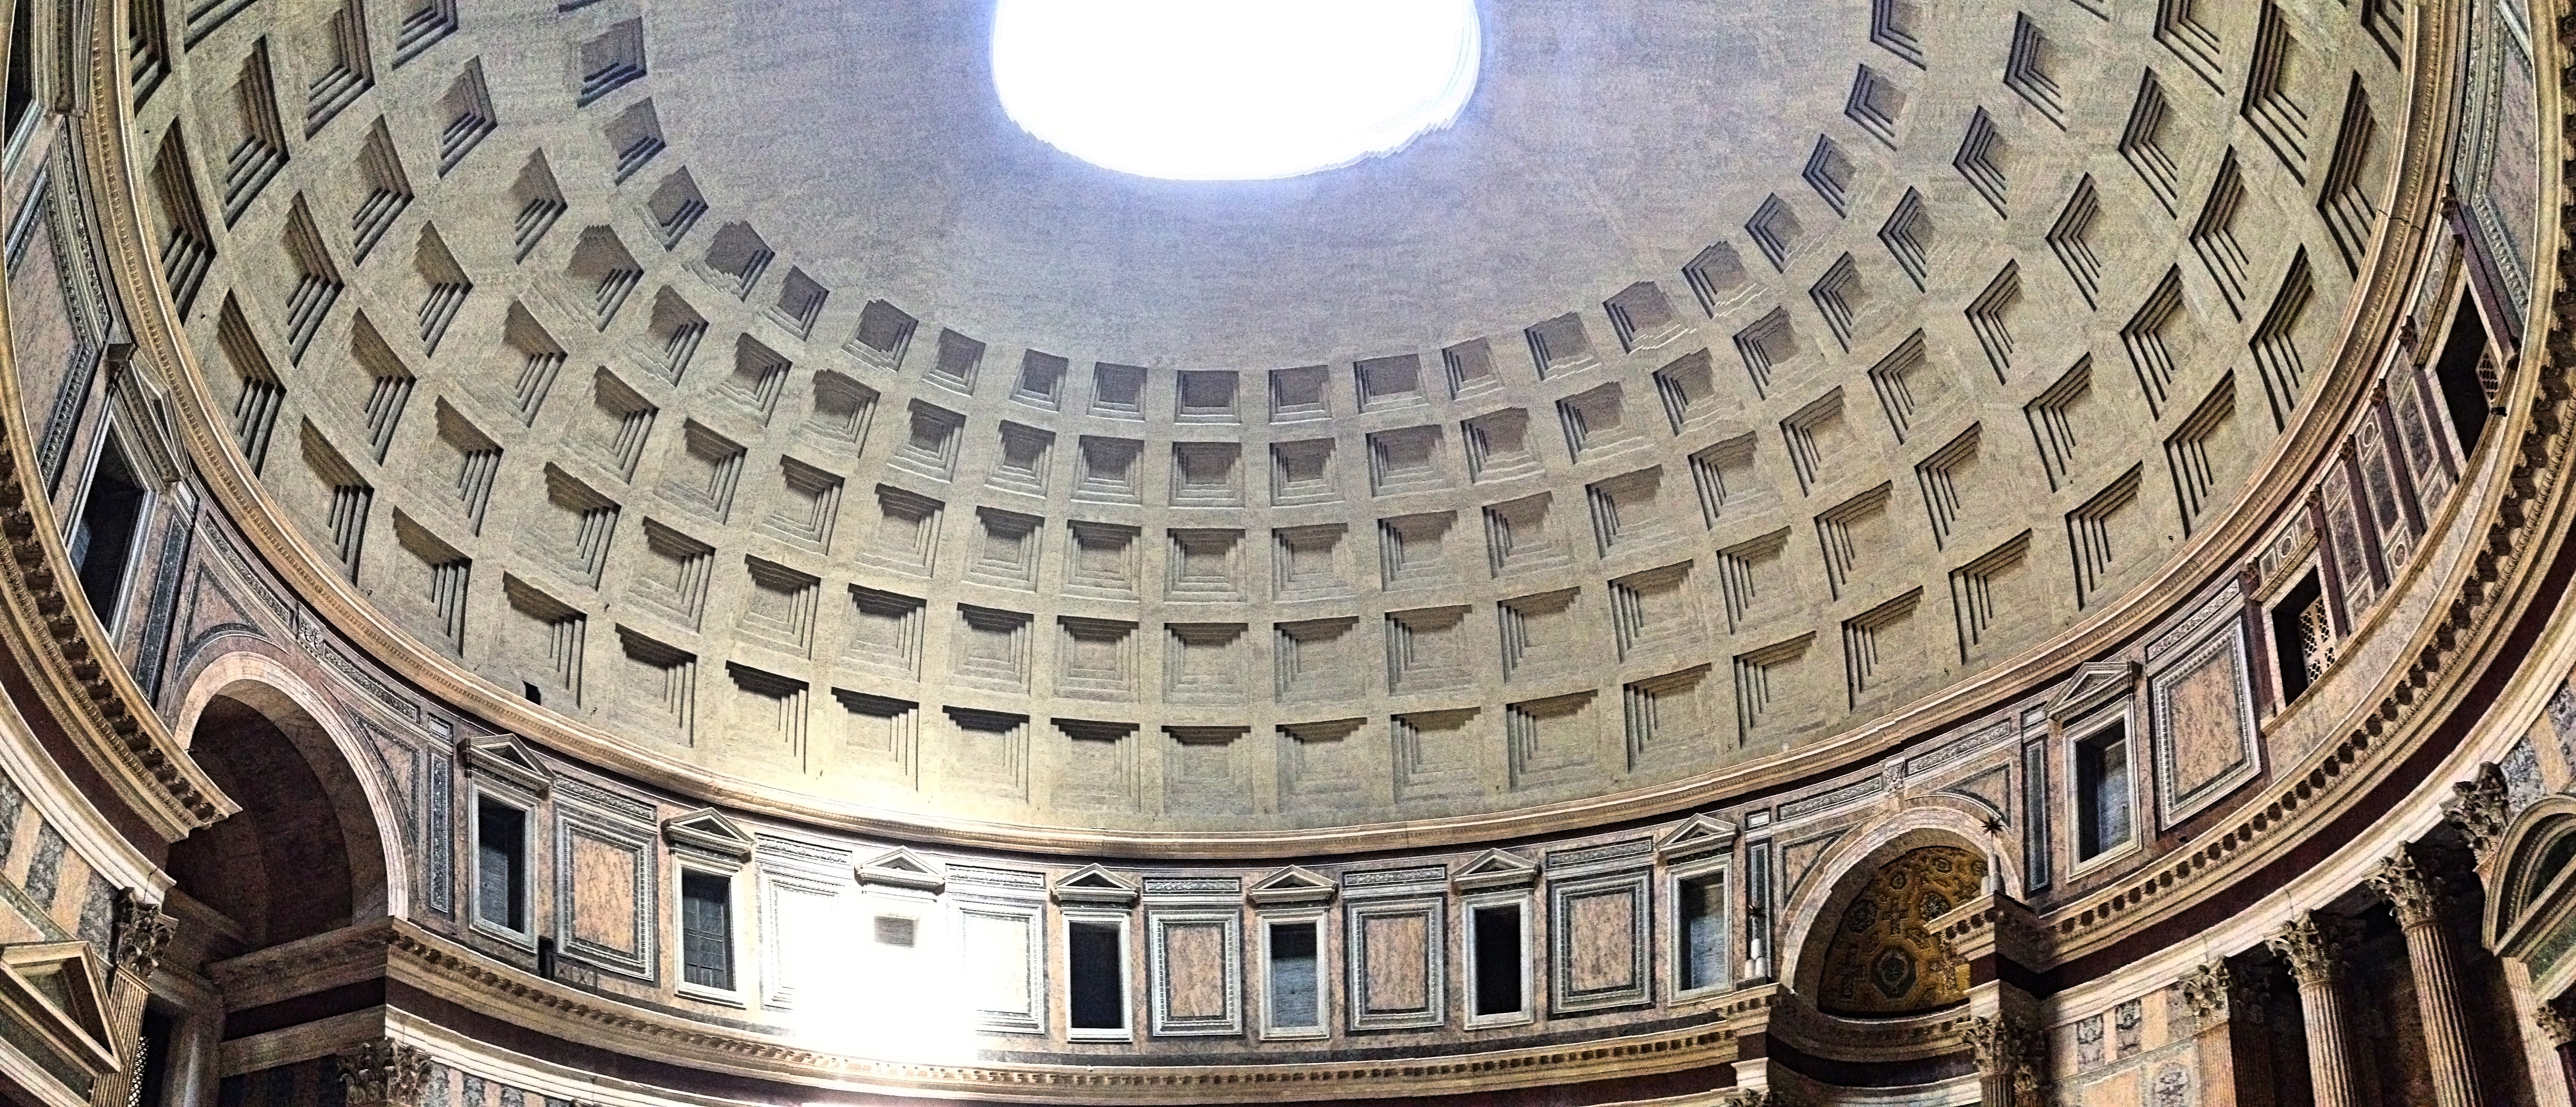 Pantheon_inside